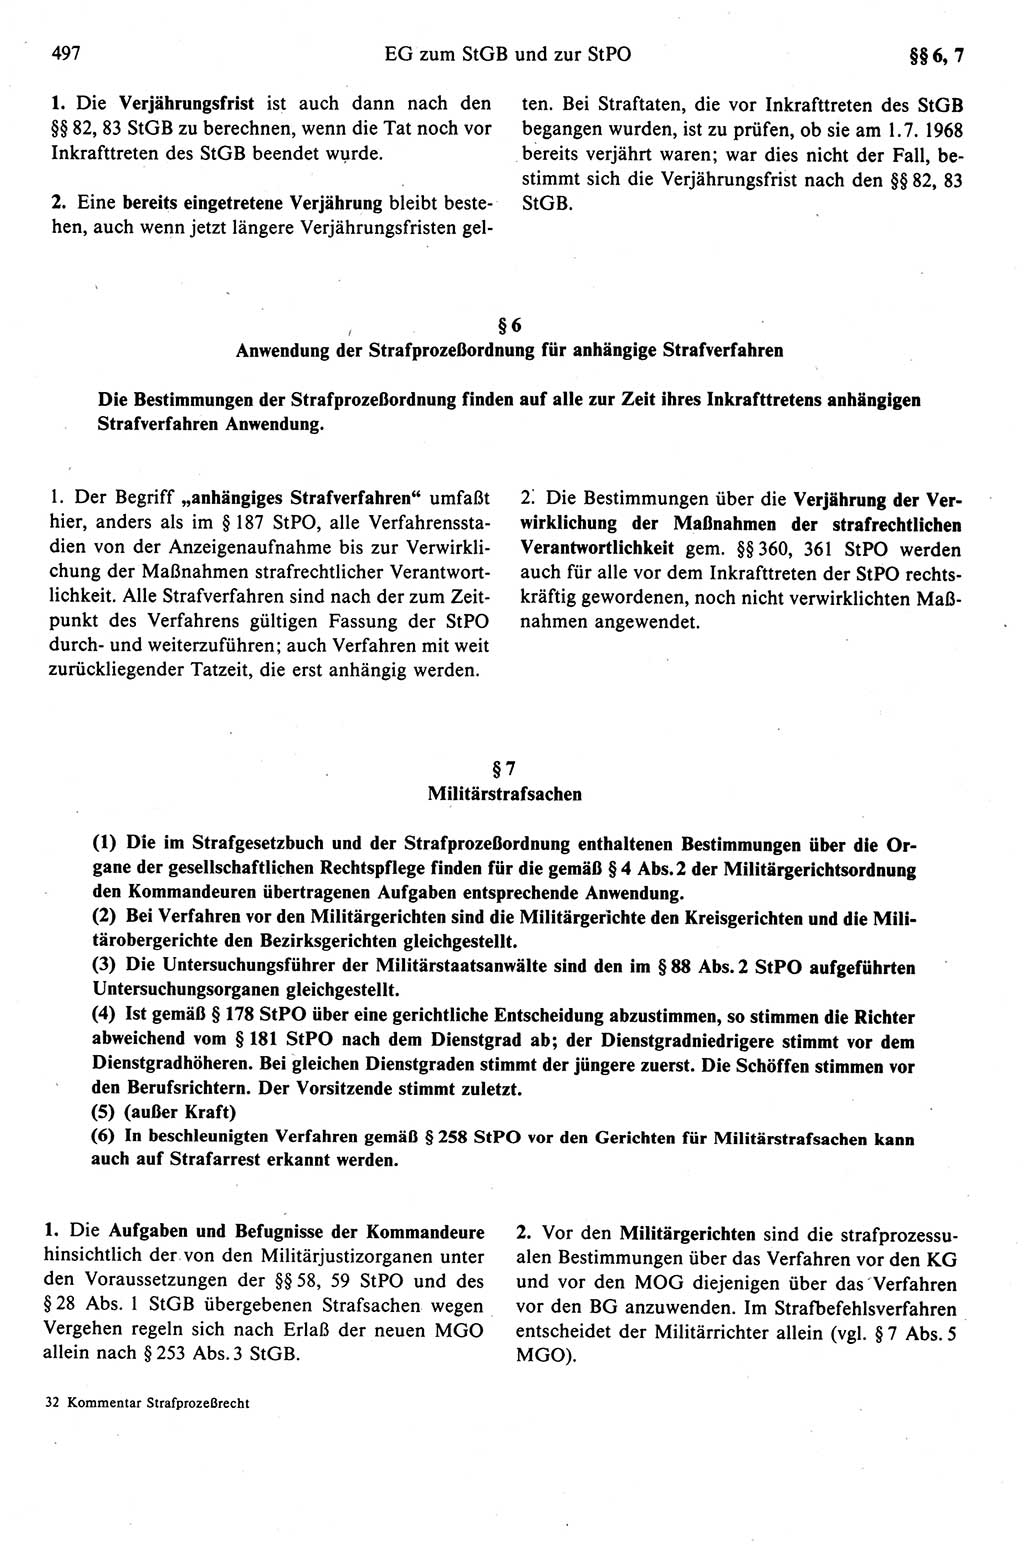 Strafprozeßrecht der DDR (Deutsche Demokratische Republik), Kommentar zur Strafprozeßordnung (StPO) 1989, Seite 497 (Strafprozeßr. DDR Komm. StPO 1989, S. 497)